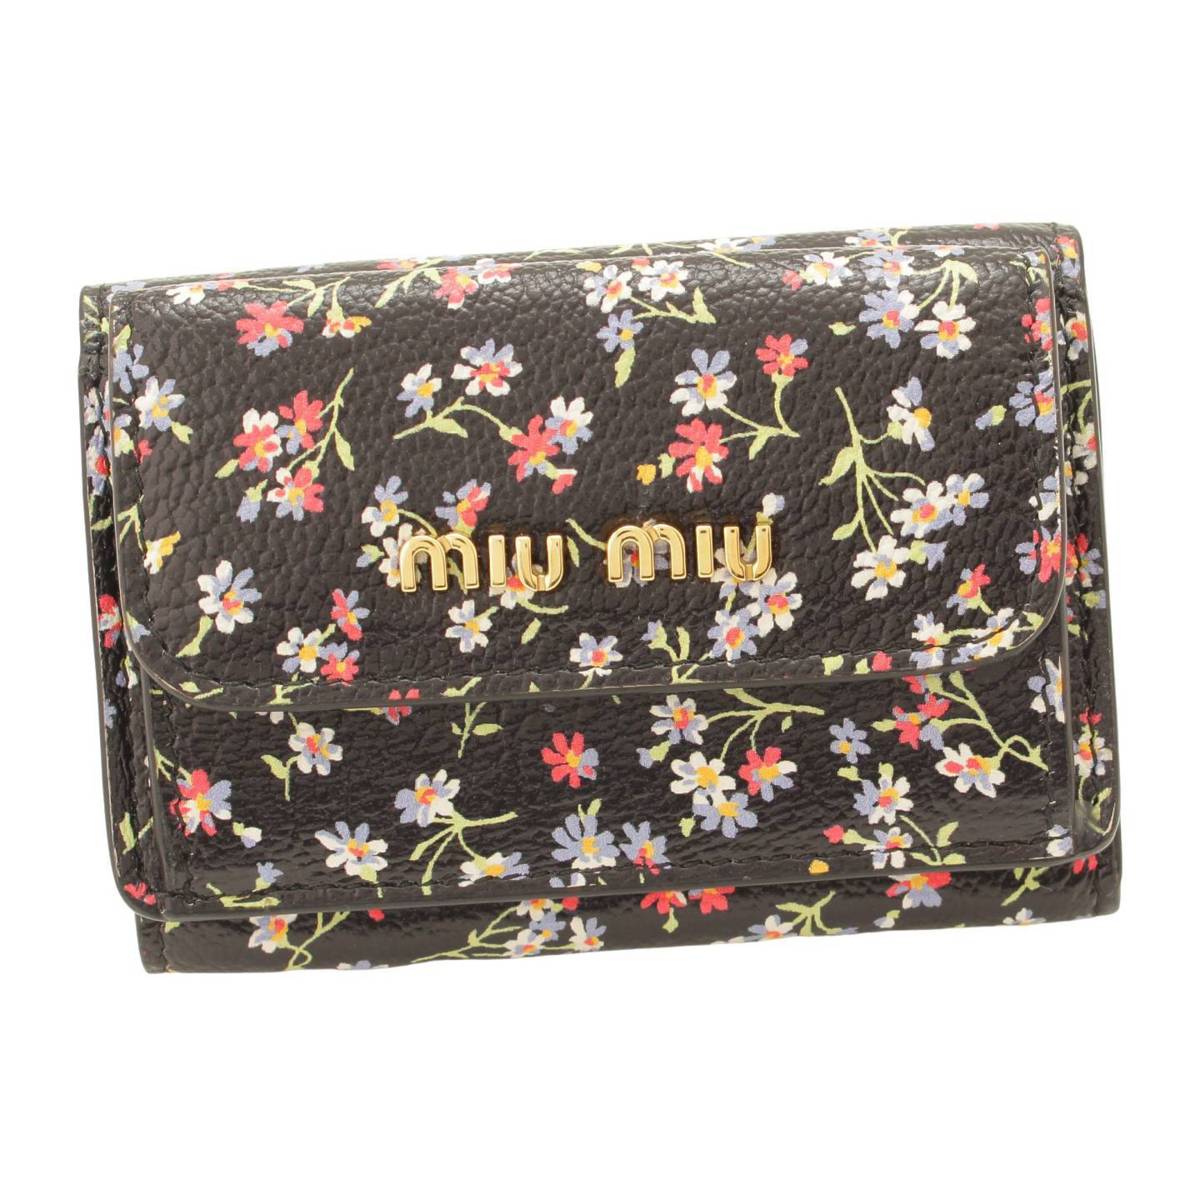 ミュウミュウ(Miu Miu) マドラス コンパクトウォレット ミニ財布 フラワー 花柄 5MH021 ブラック